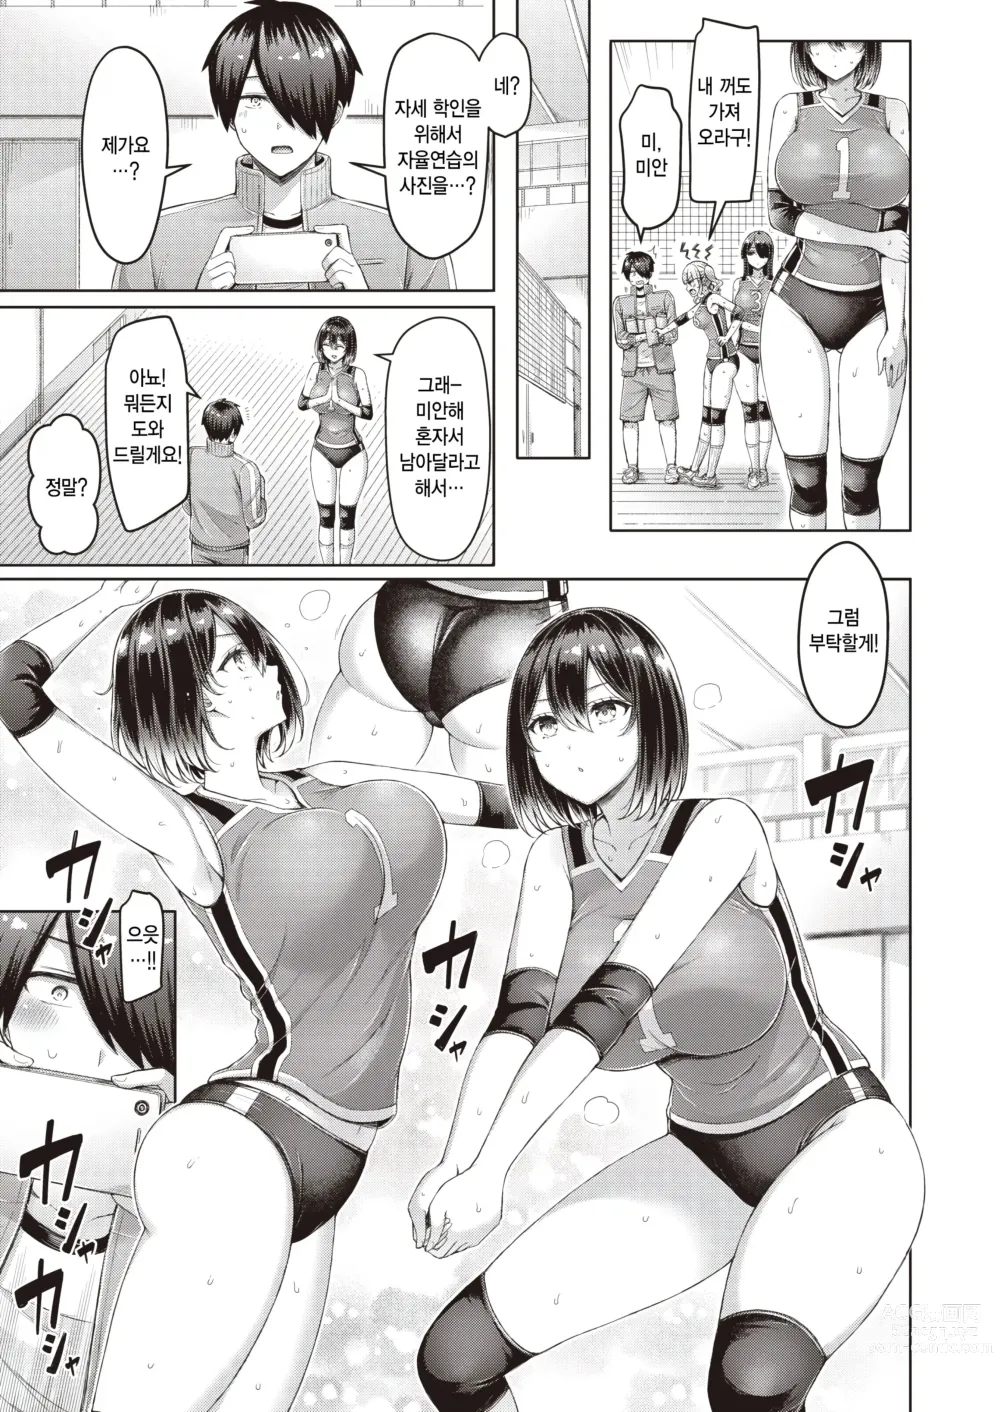 Page 3 of manga Quickspike!